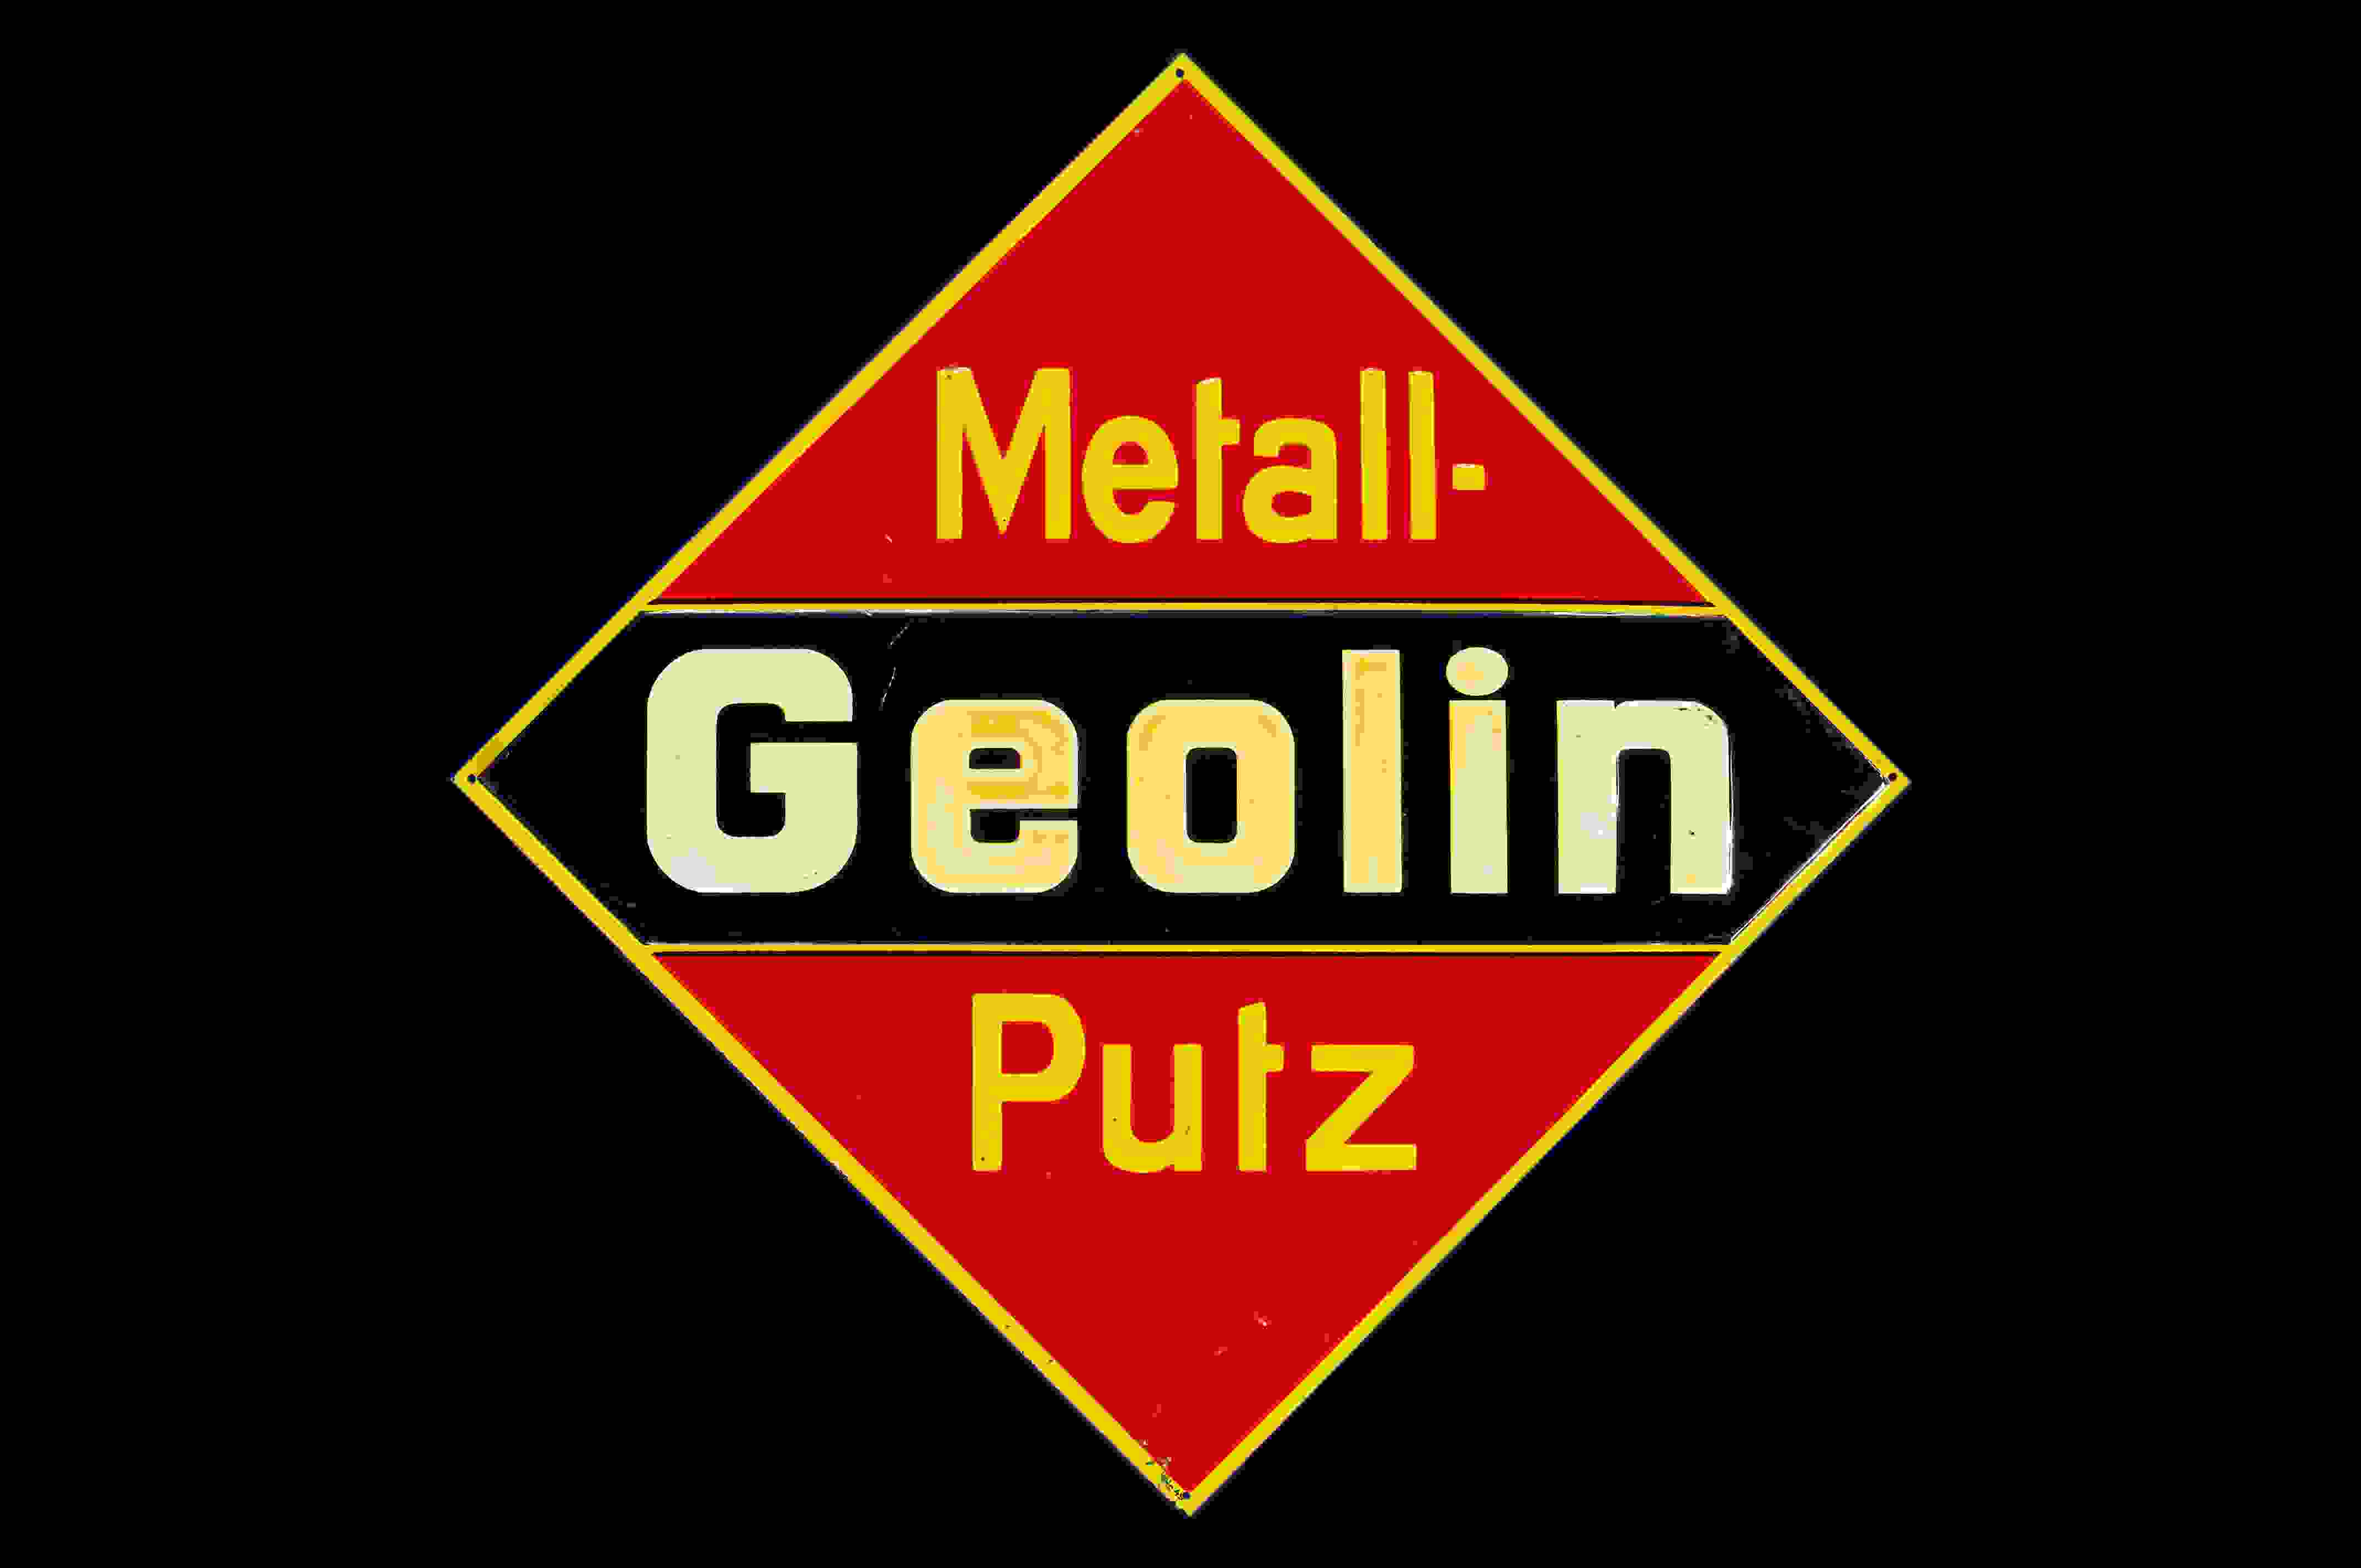 Geolin Metallputz 